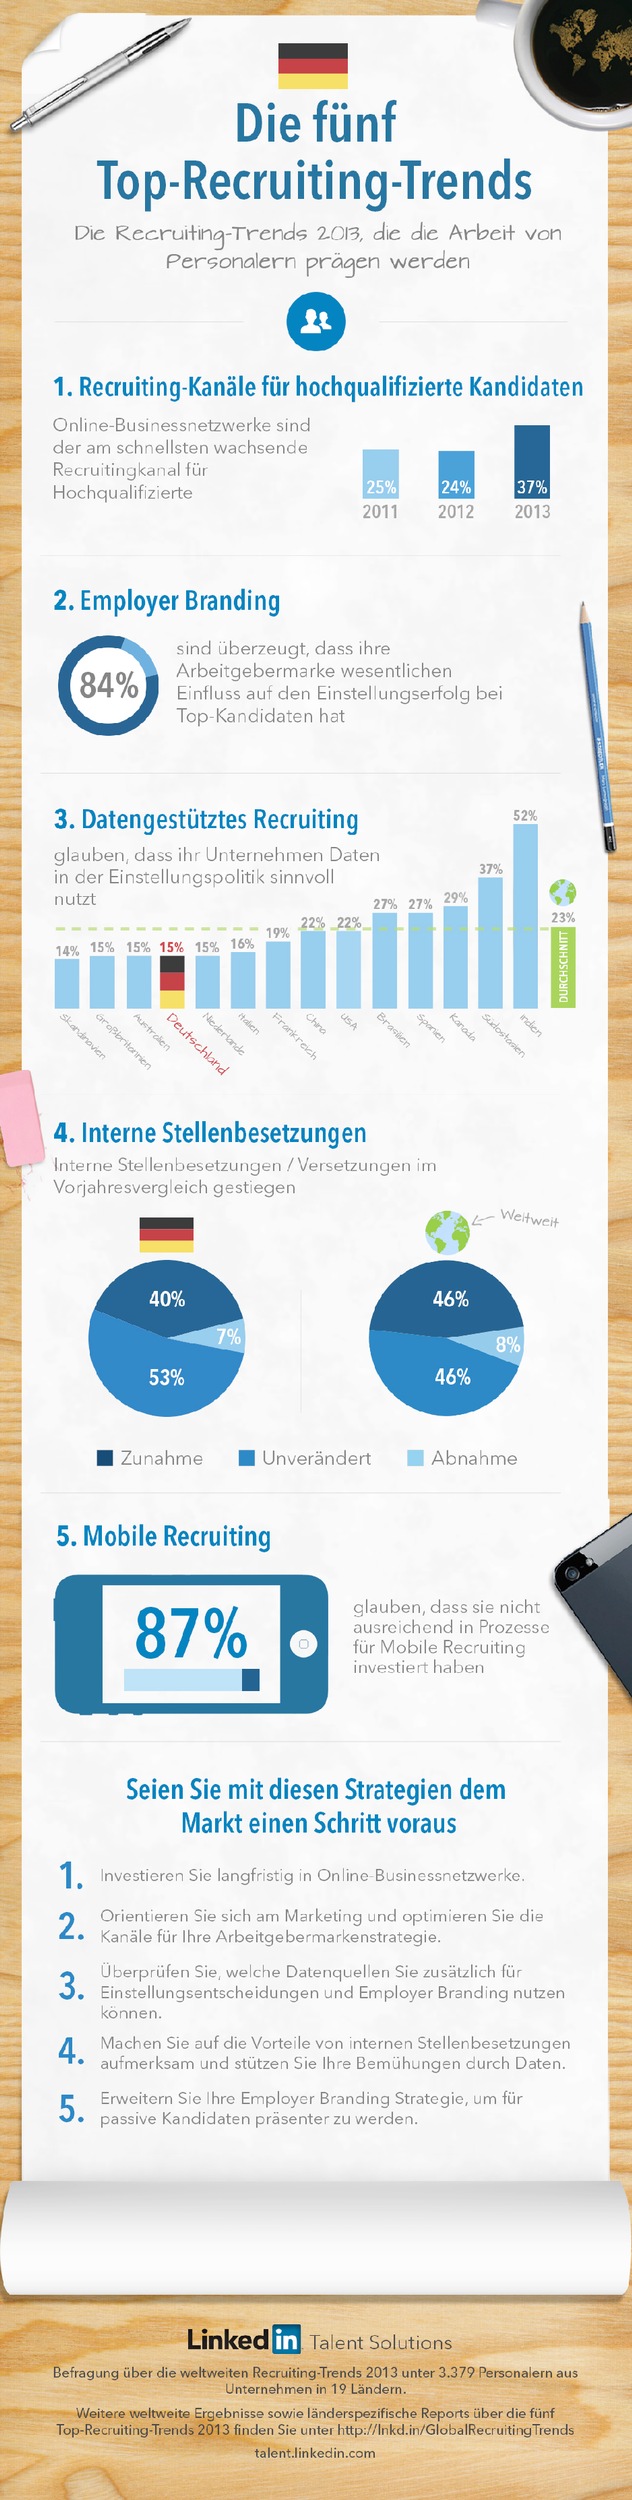 Online-Businessnetzwerke und Employer Branding bestimmen Recruiting-Trends 2013 (BILD)